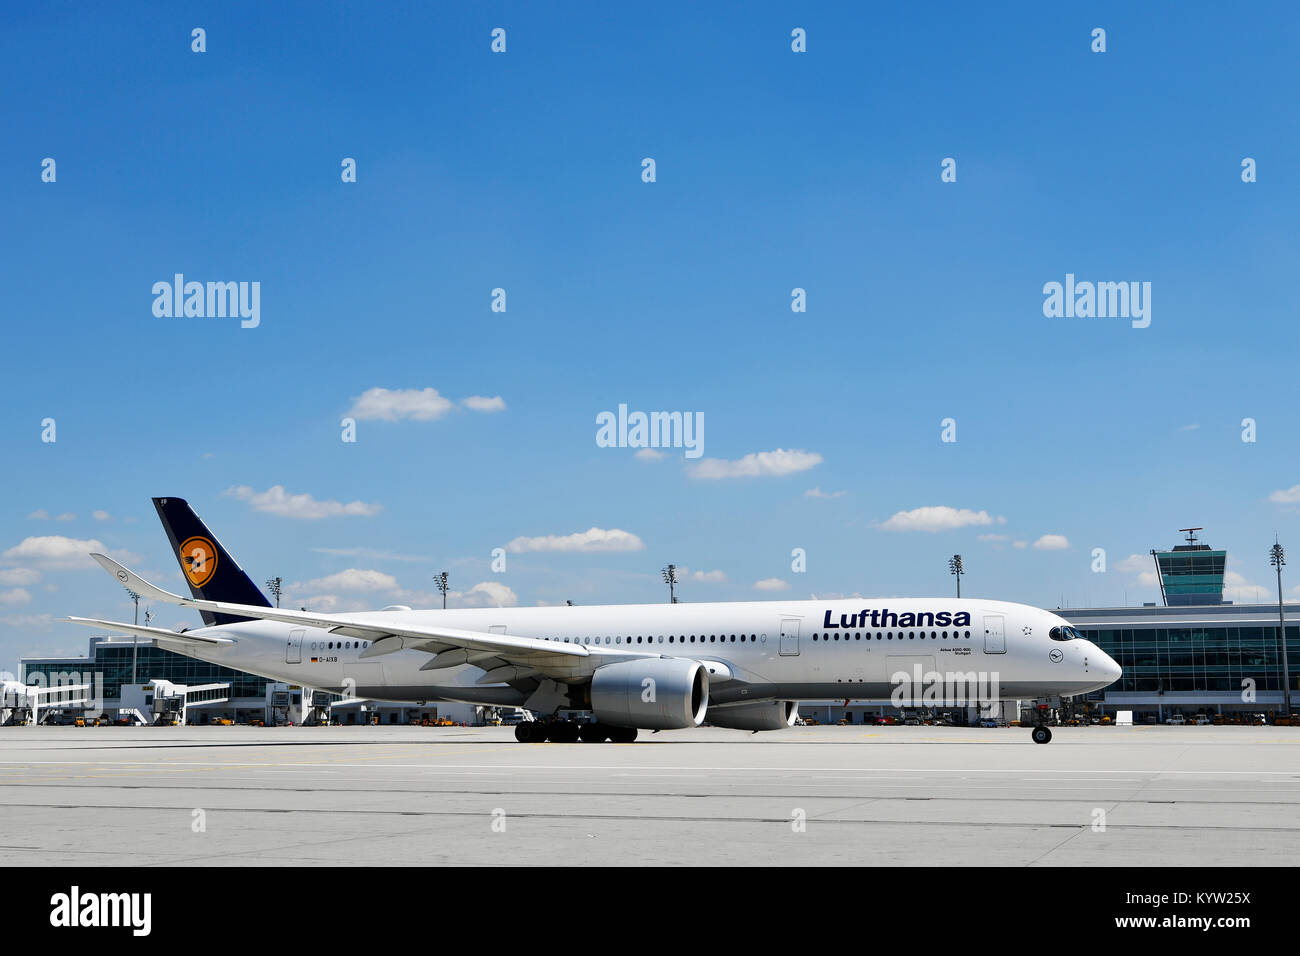 Lufthansa, Airbus, A350-900, avion, avion, avion, compagnies aériennes, airways, rouleau, in, out, de prendre, de commencer, de pousser, rampe, l'aéroport de Munich, Banque D'Images